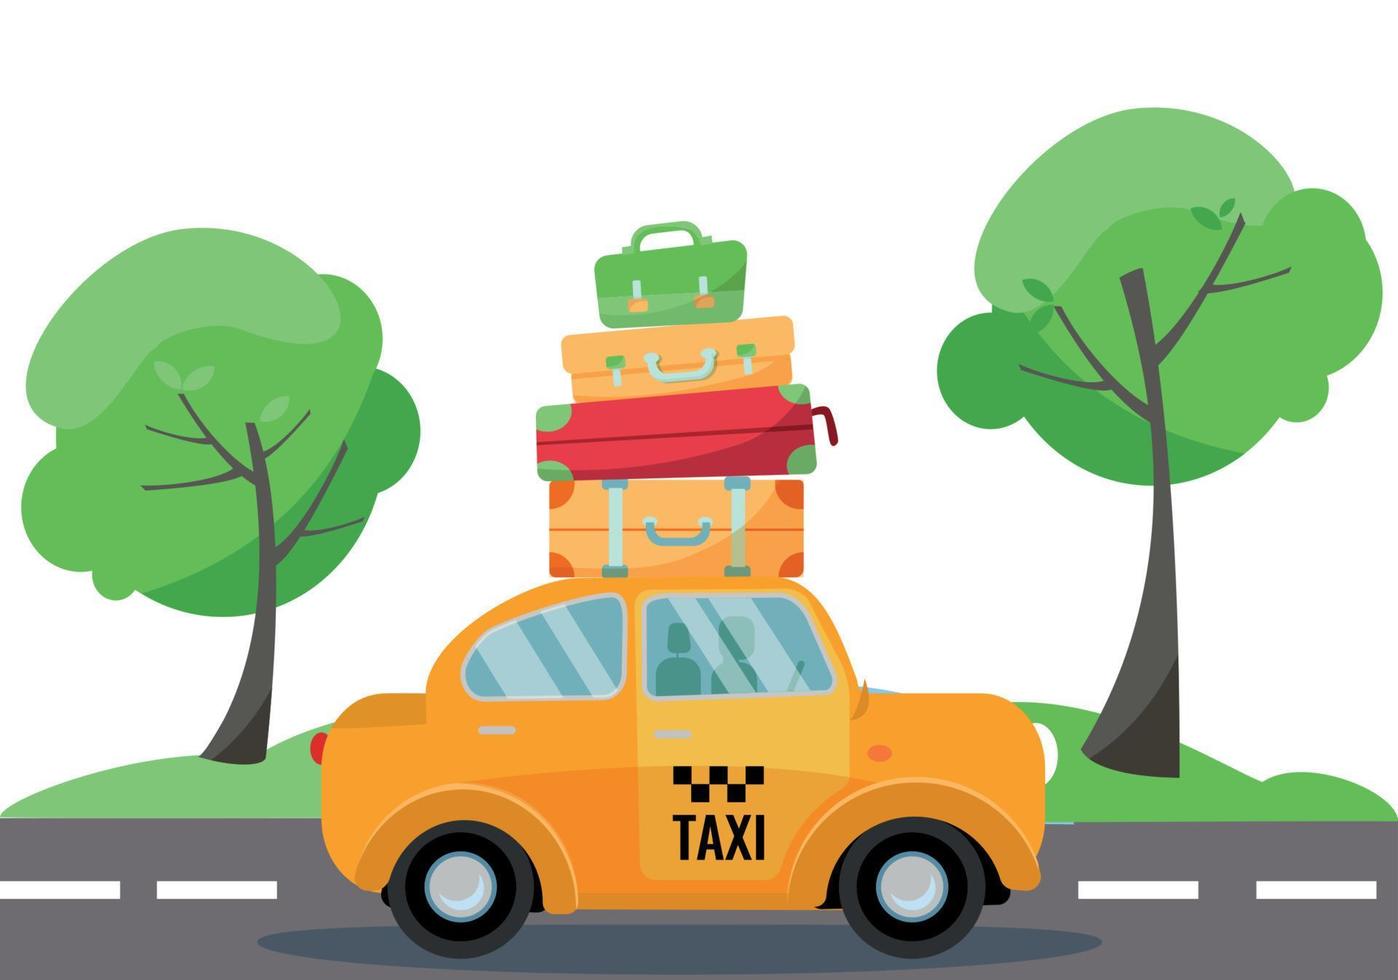 taxi amarillo con una pila de maletas y equipaje en el techo para conducir por la carretera. paisaje de verano con árboles verdes. vista lateral del vehículo. ilustración de dibujos animados plano vectorial vector